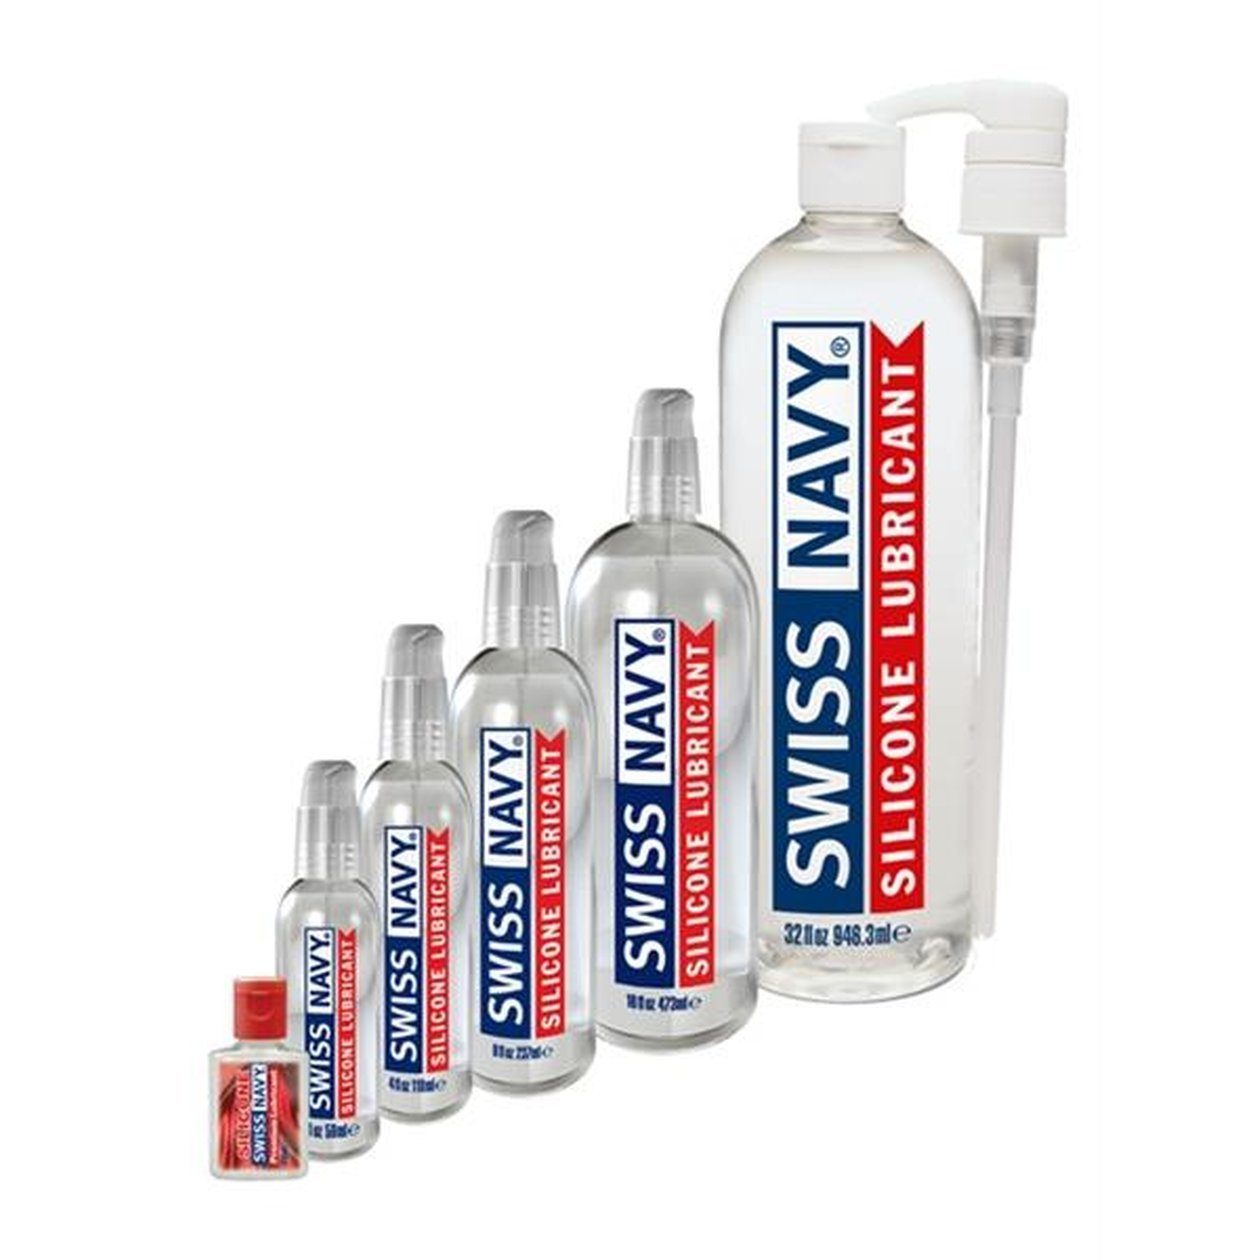 SWISS NAVY Gleit- und Massagegel Silikonbasis auf Silicone Premium Gleitmittel Lubricant 